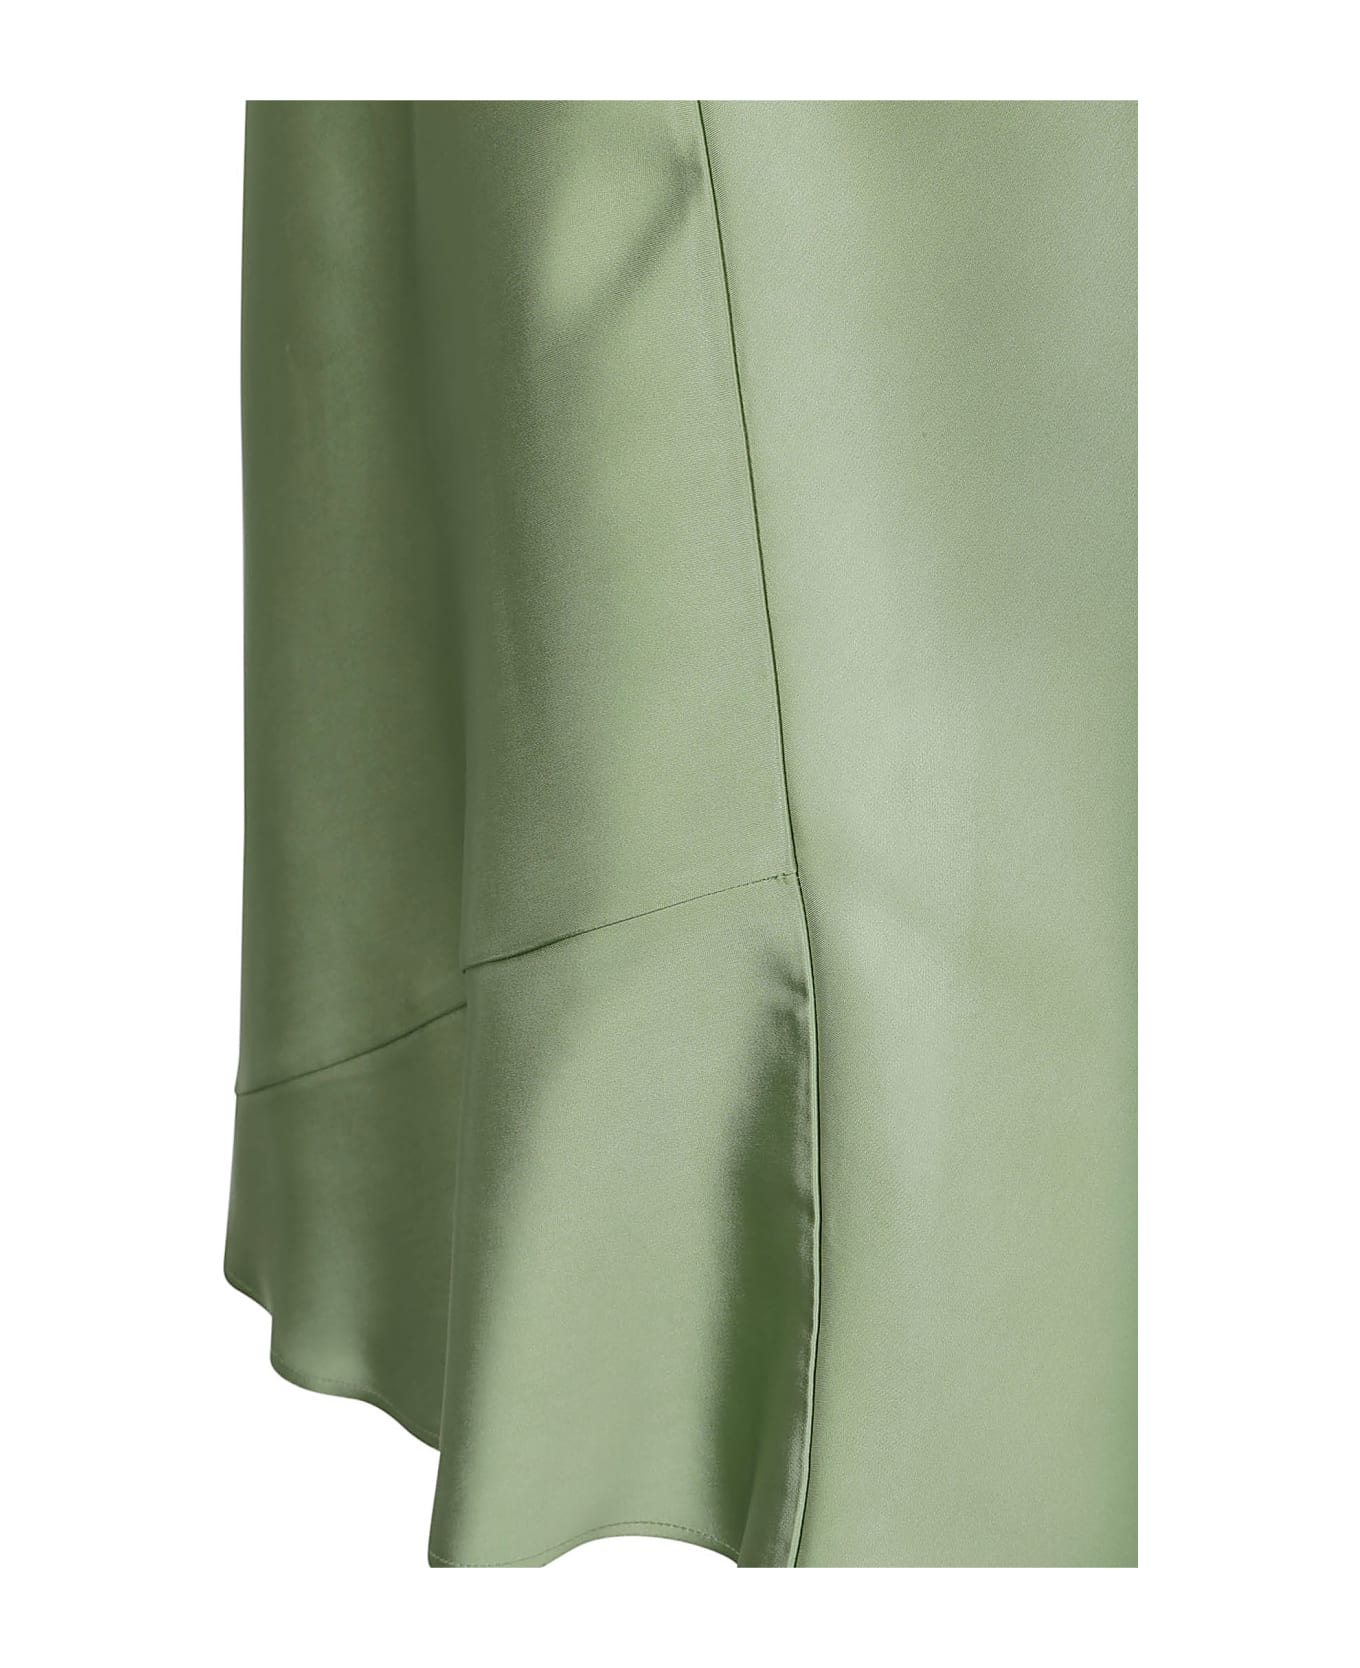 N.21 N°21 Skirts Green - Green スカート